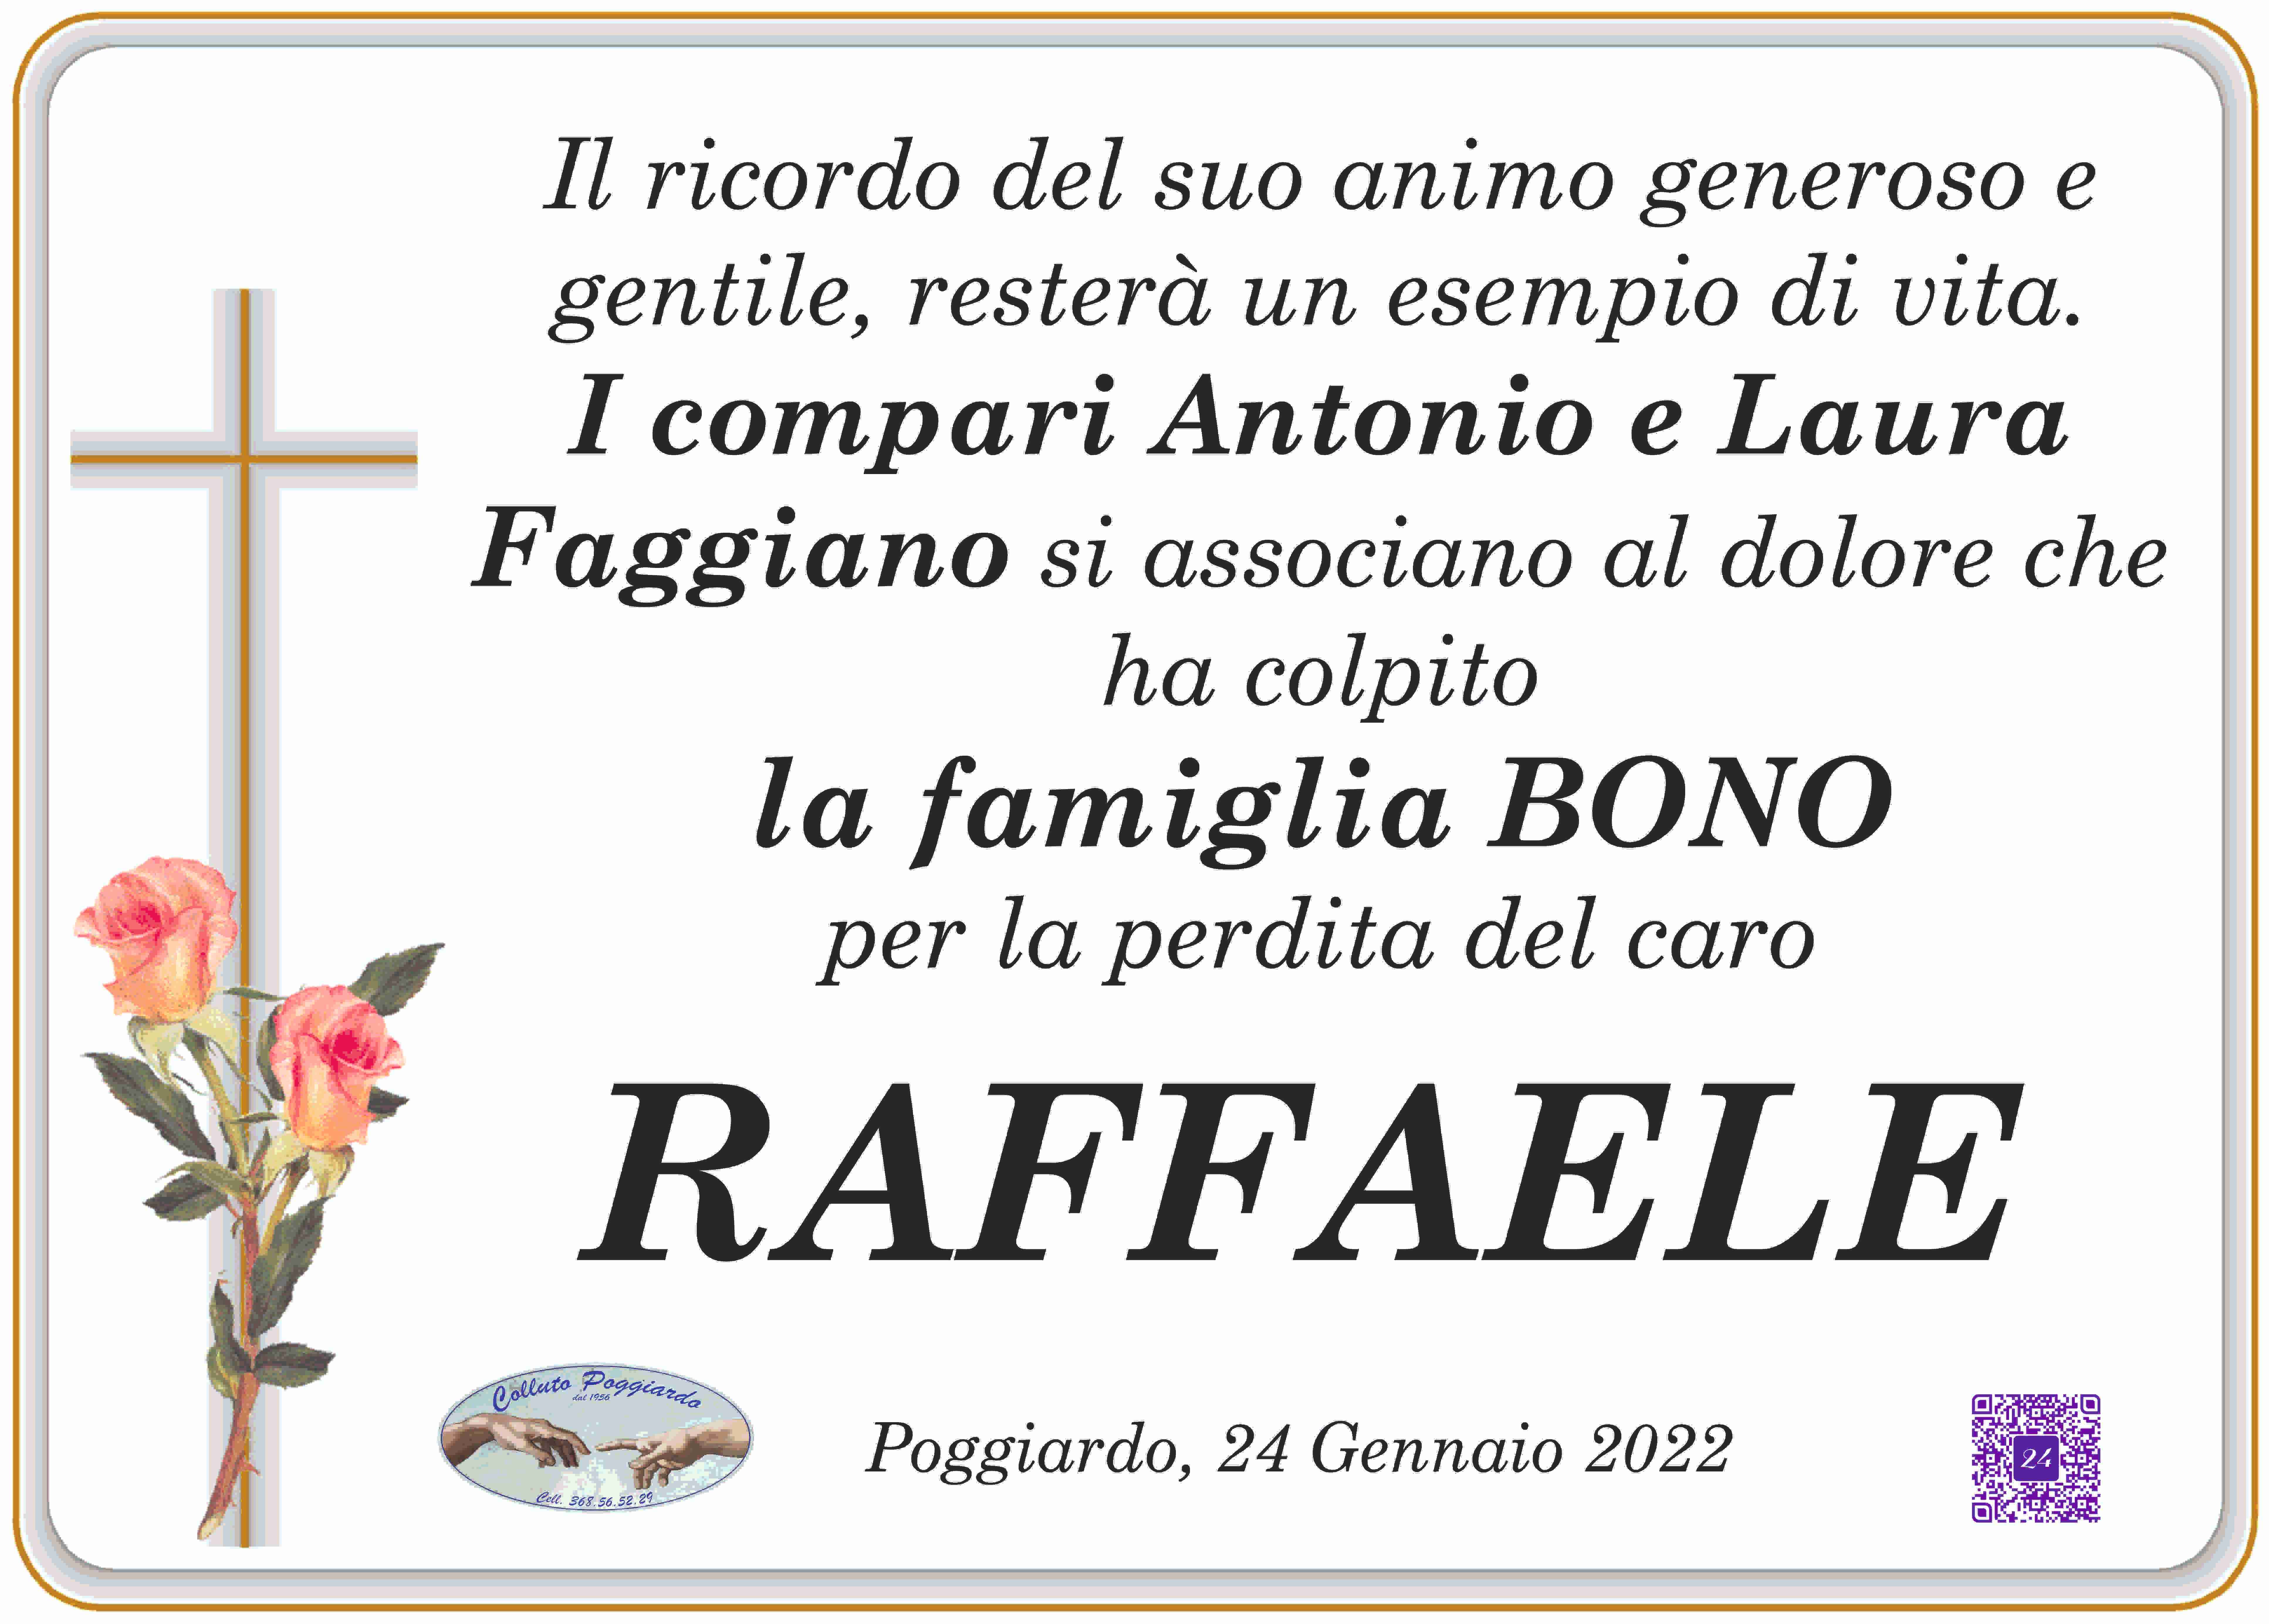 Raffaele Bono